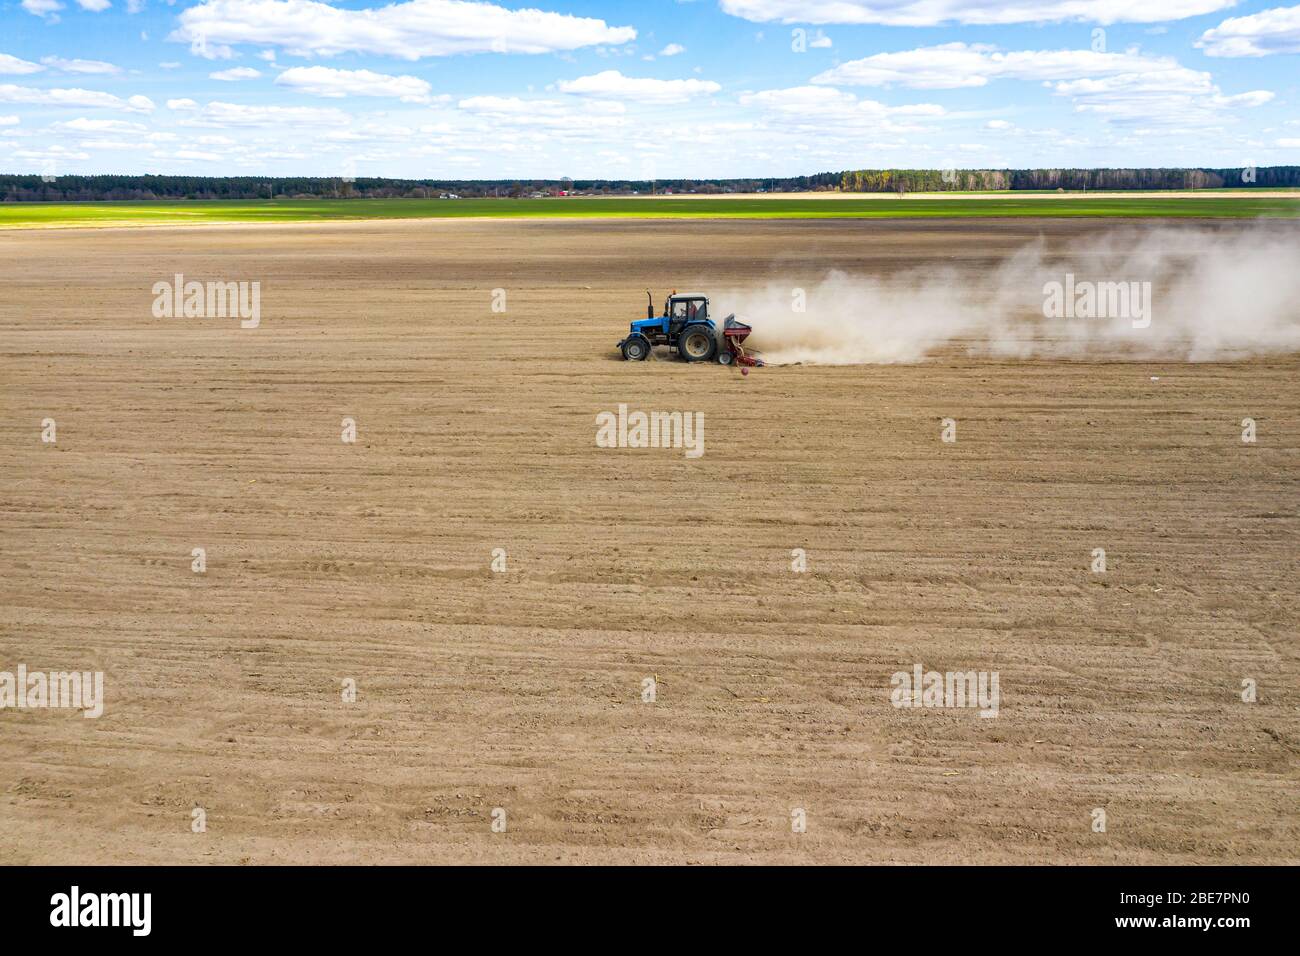 vista lateral del tractor sembrando semillas de maíz en el campo, fotografía de drones con vista en ángulo alto Foto de stock